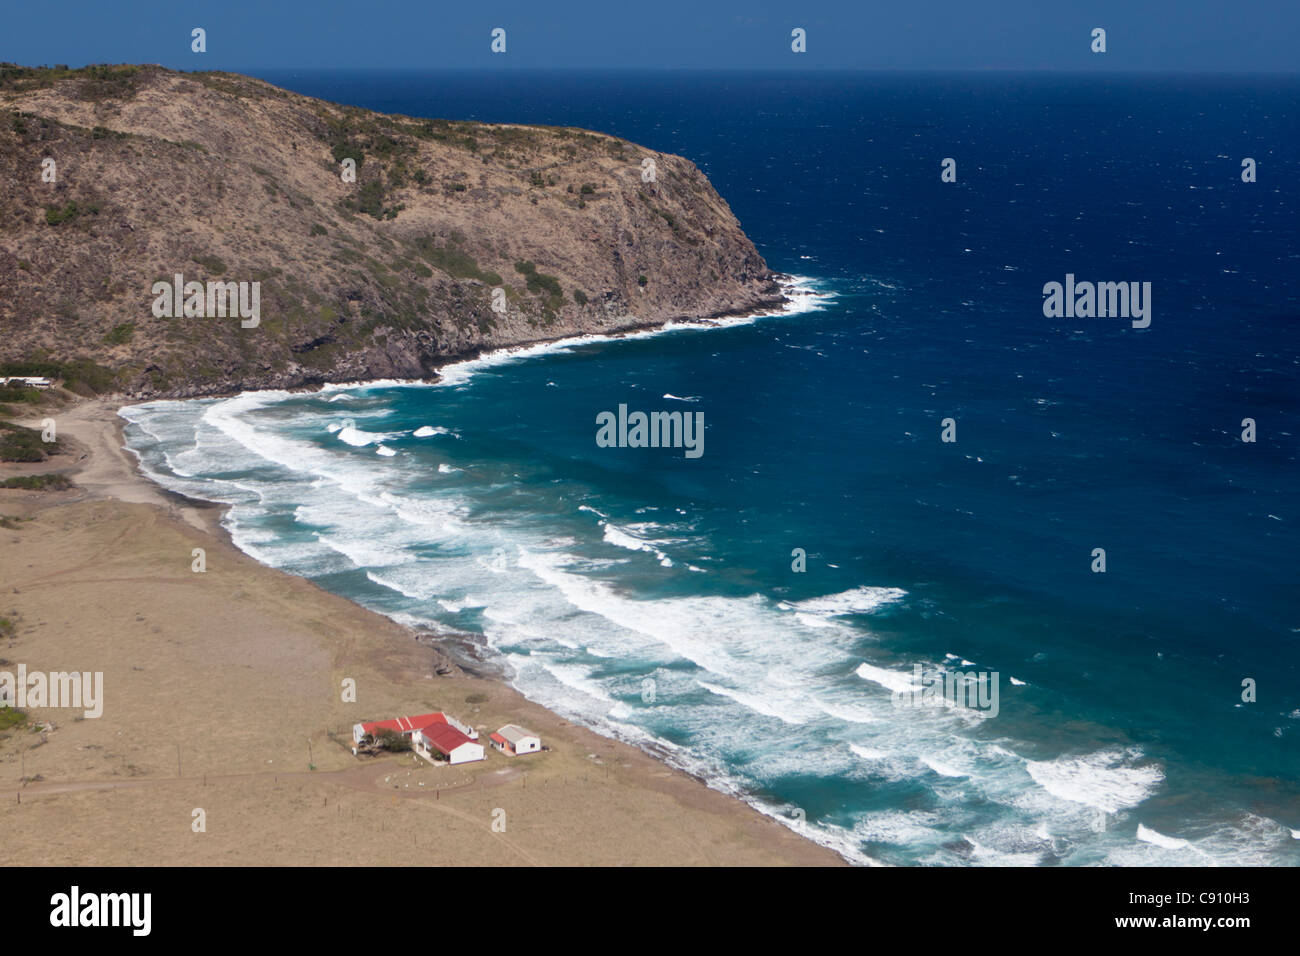 Den Niederlanden, Oranjestad, Sint Eustatius Insel, Niederländische Karibik. Anzeigen auf Gilboa Hügel und auf dem Bauernhof in der Nähe von Strand. Luft. Stockfoto